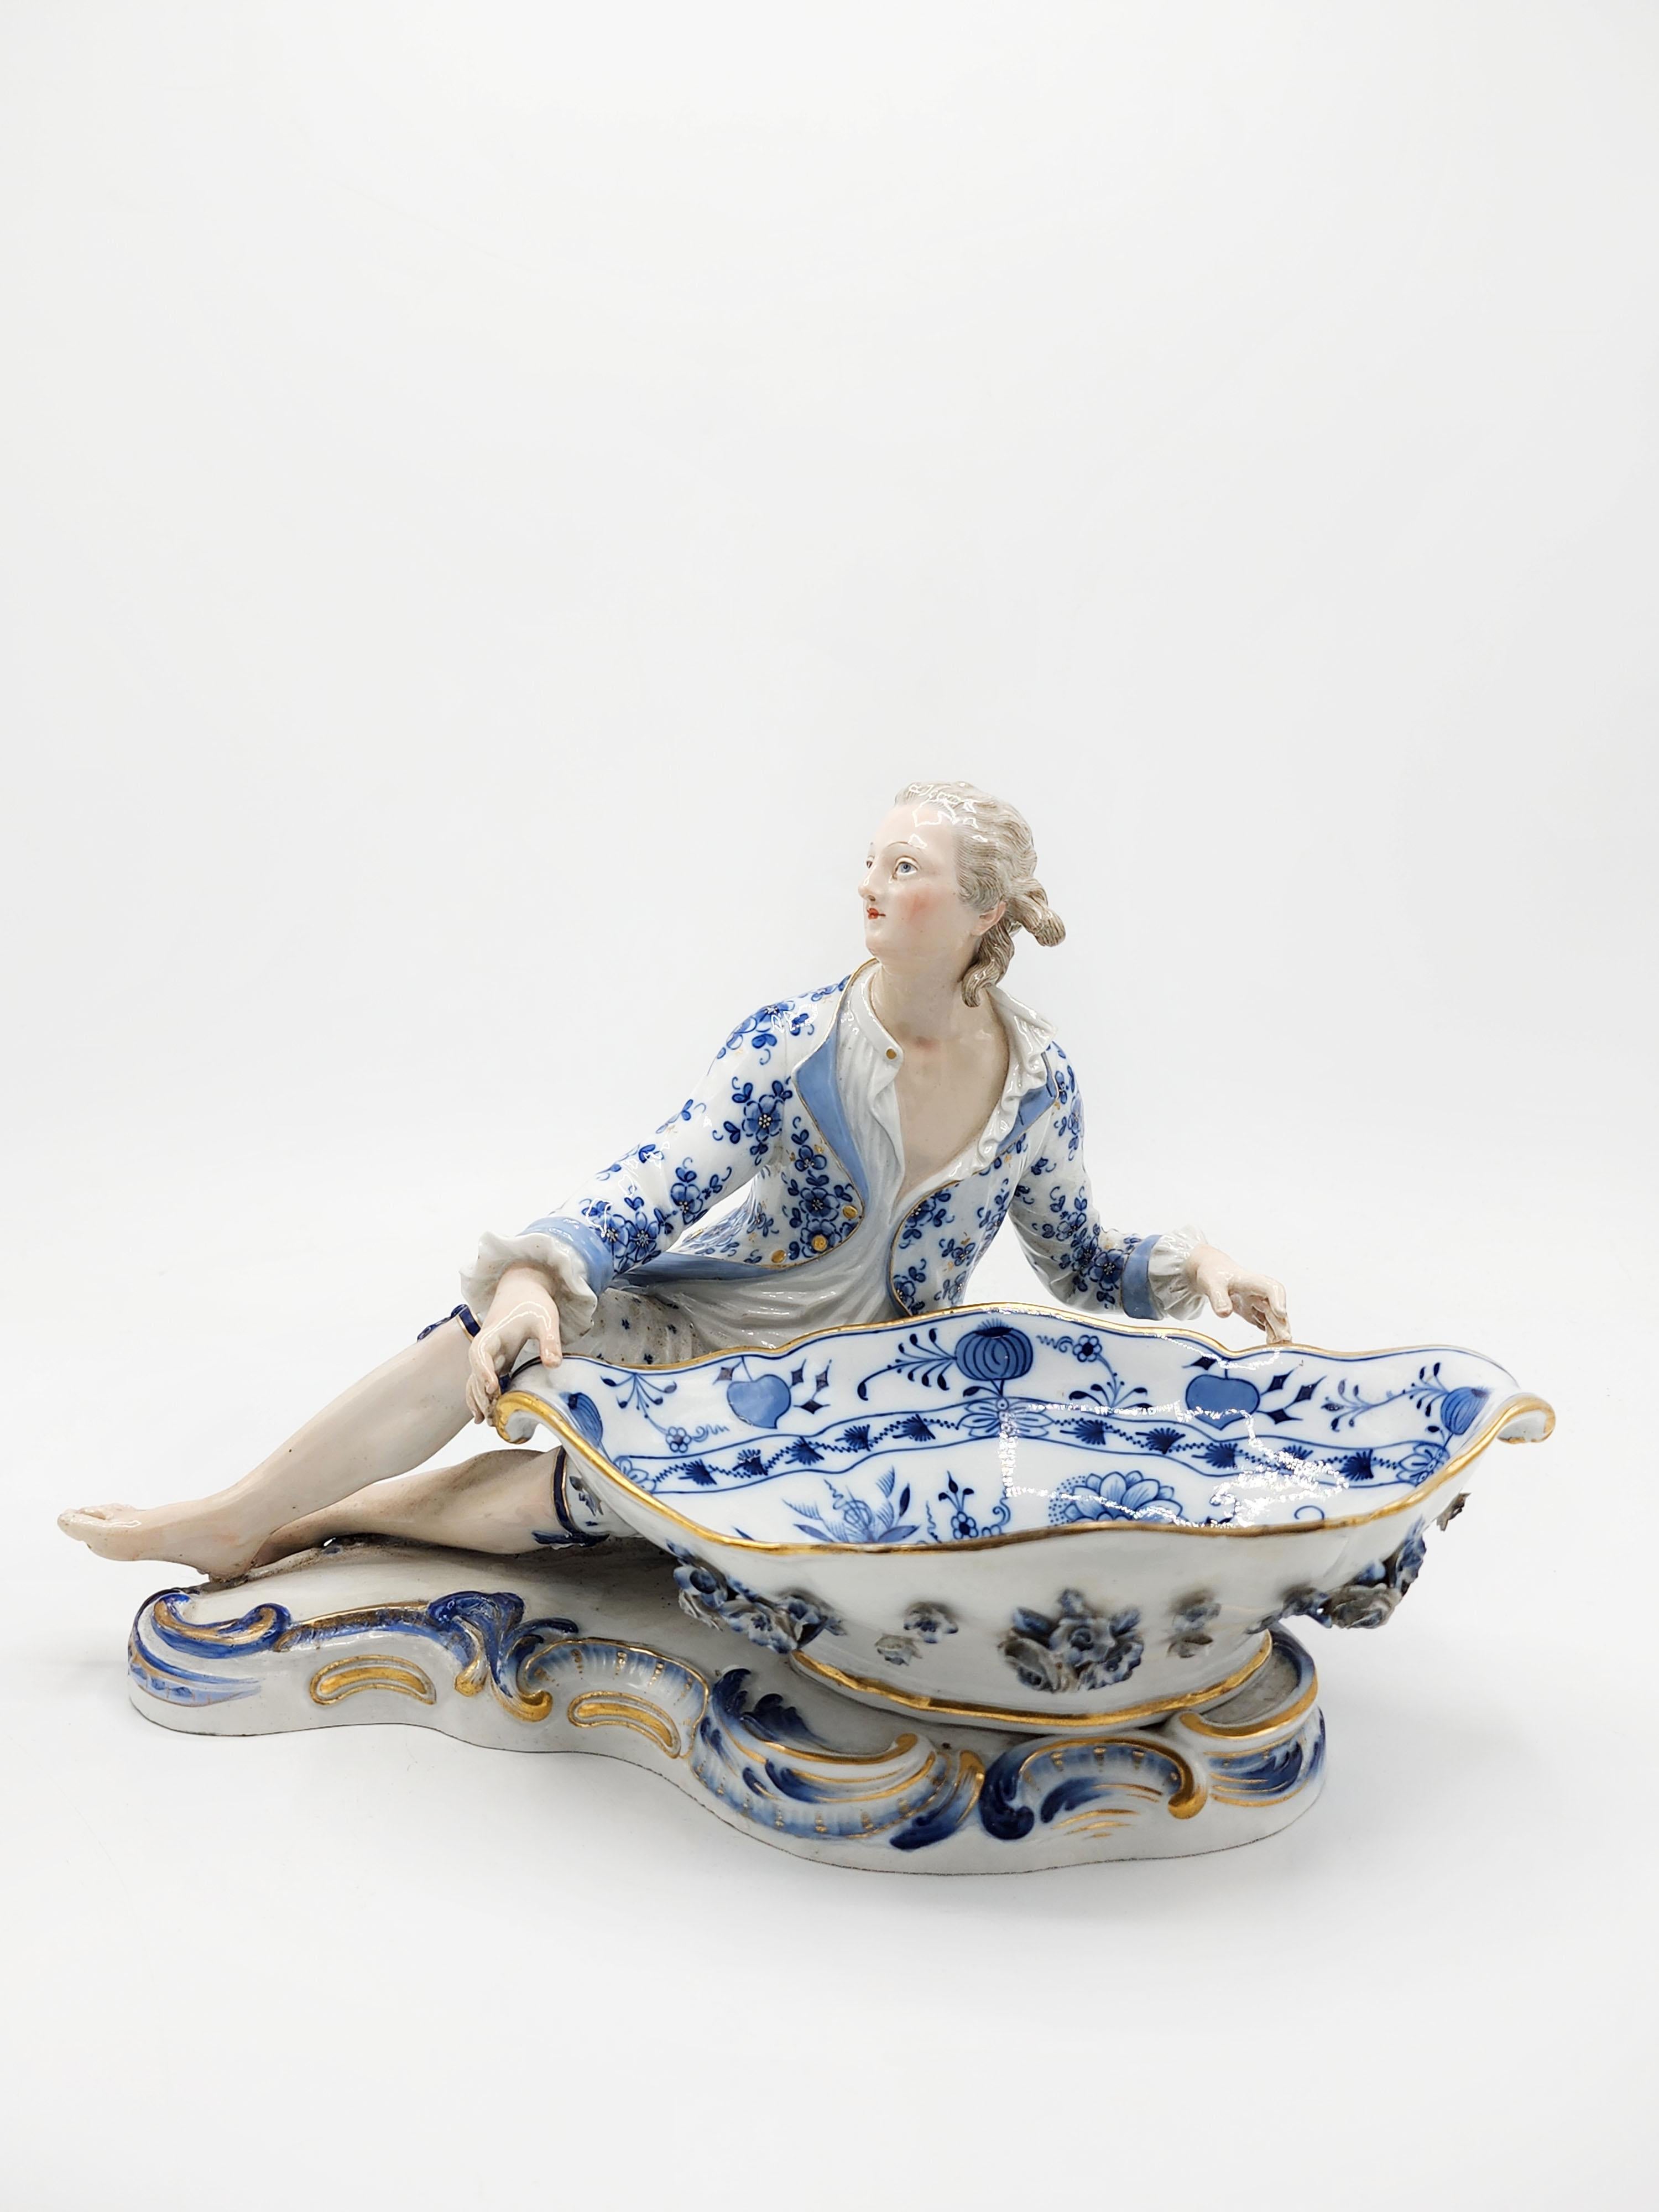 Meissen 19th Century Porcelain Figure
